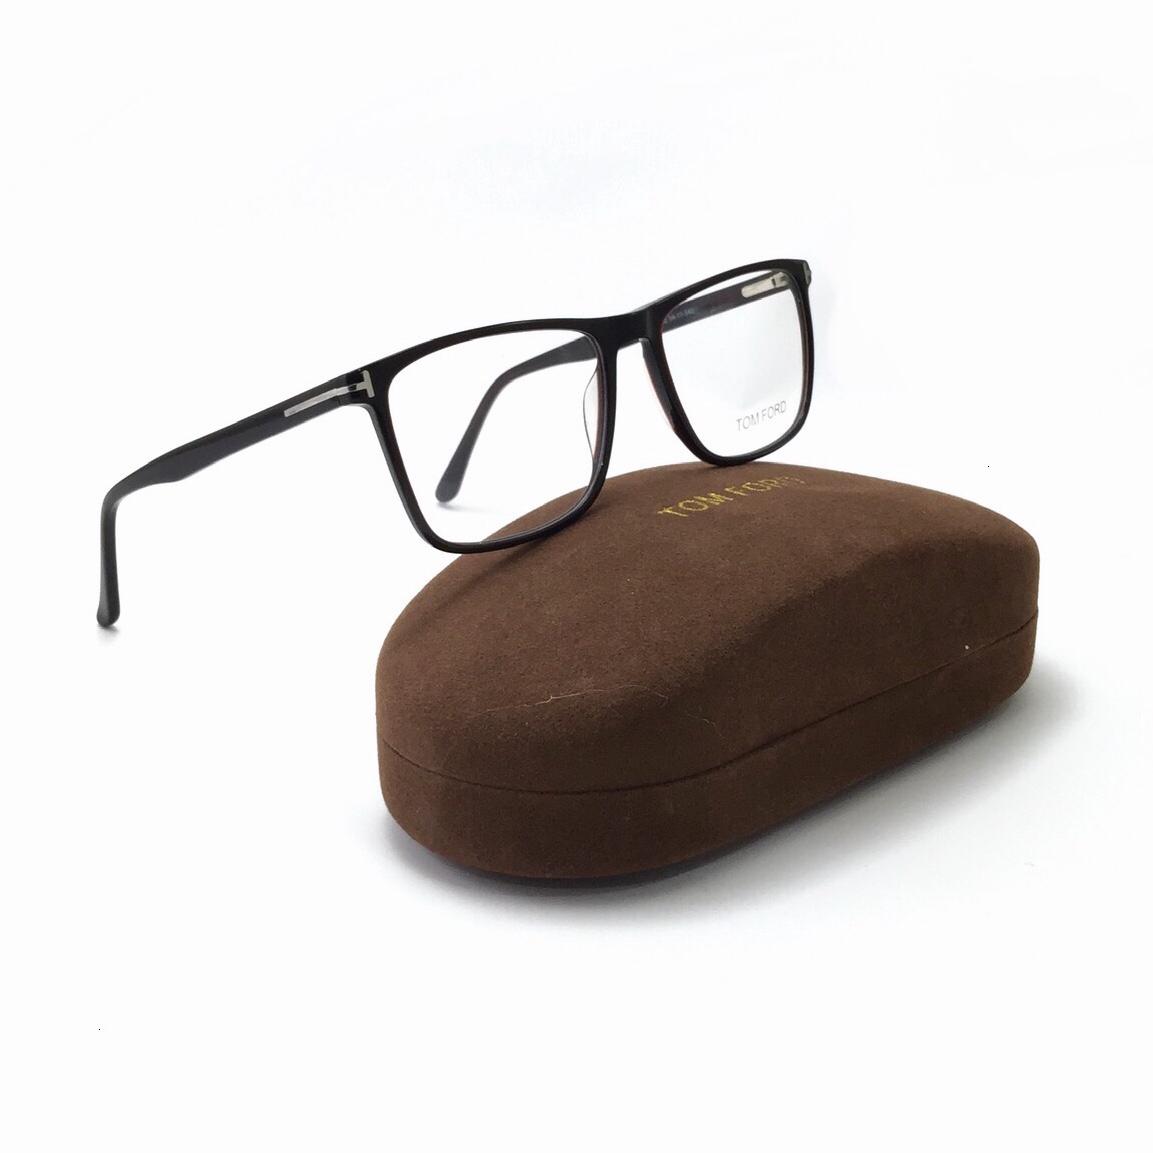 نظارة طبية مستطيلة الشكل من توم فورد FT5650